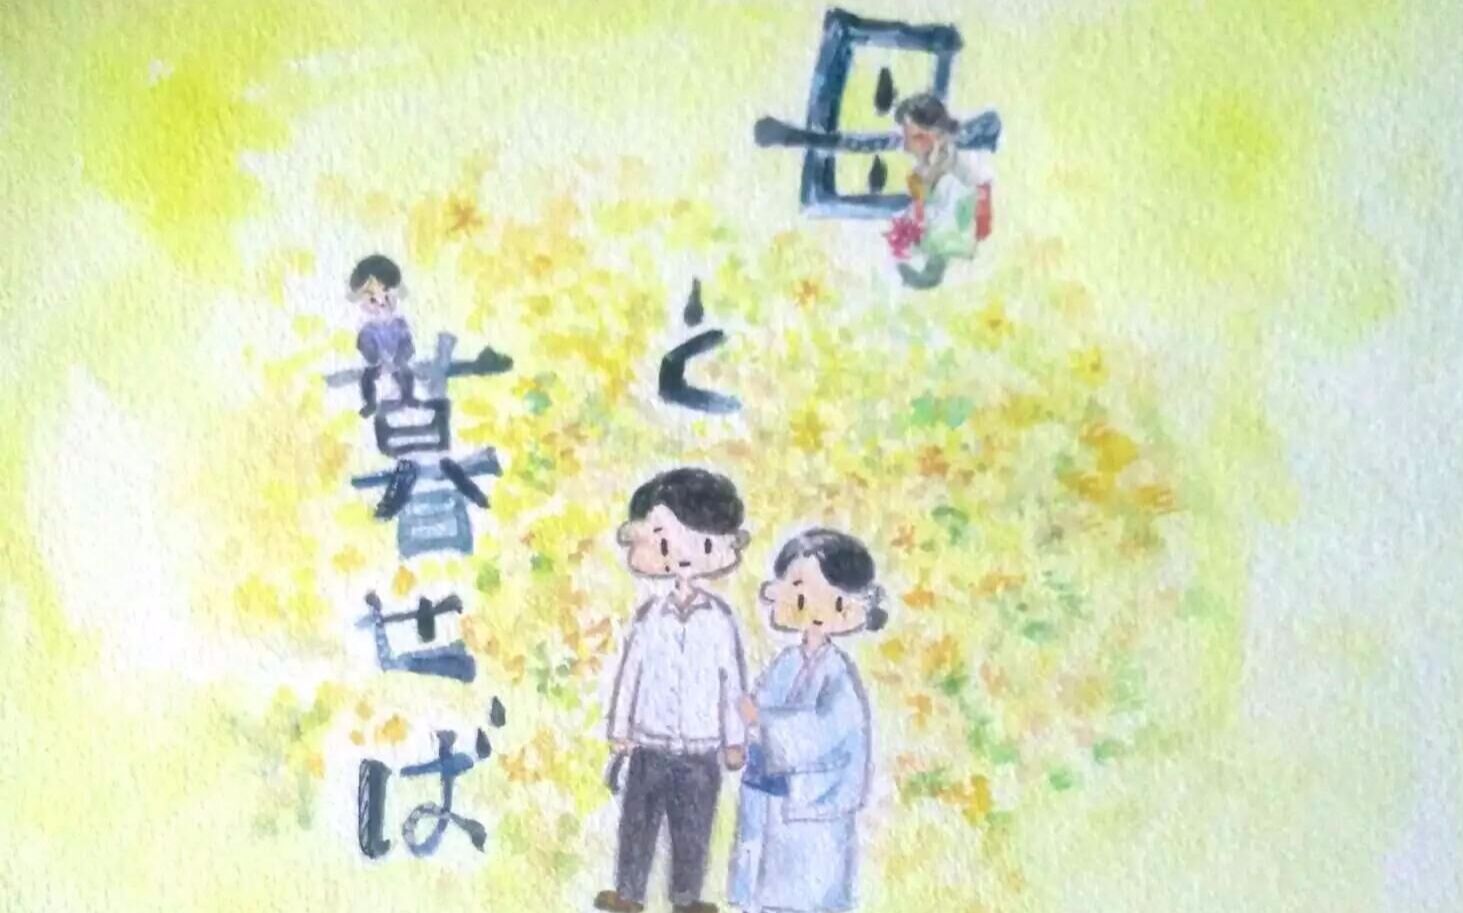 【日影】假如和母亲一起生活  2015年  吉永小百合/二宫和也/黑木华